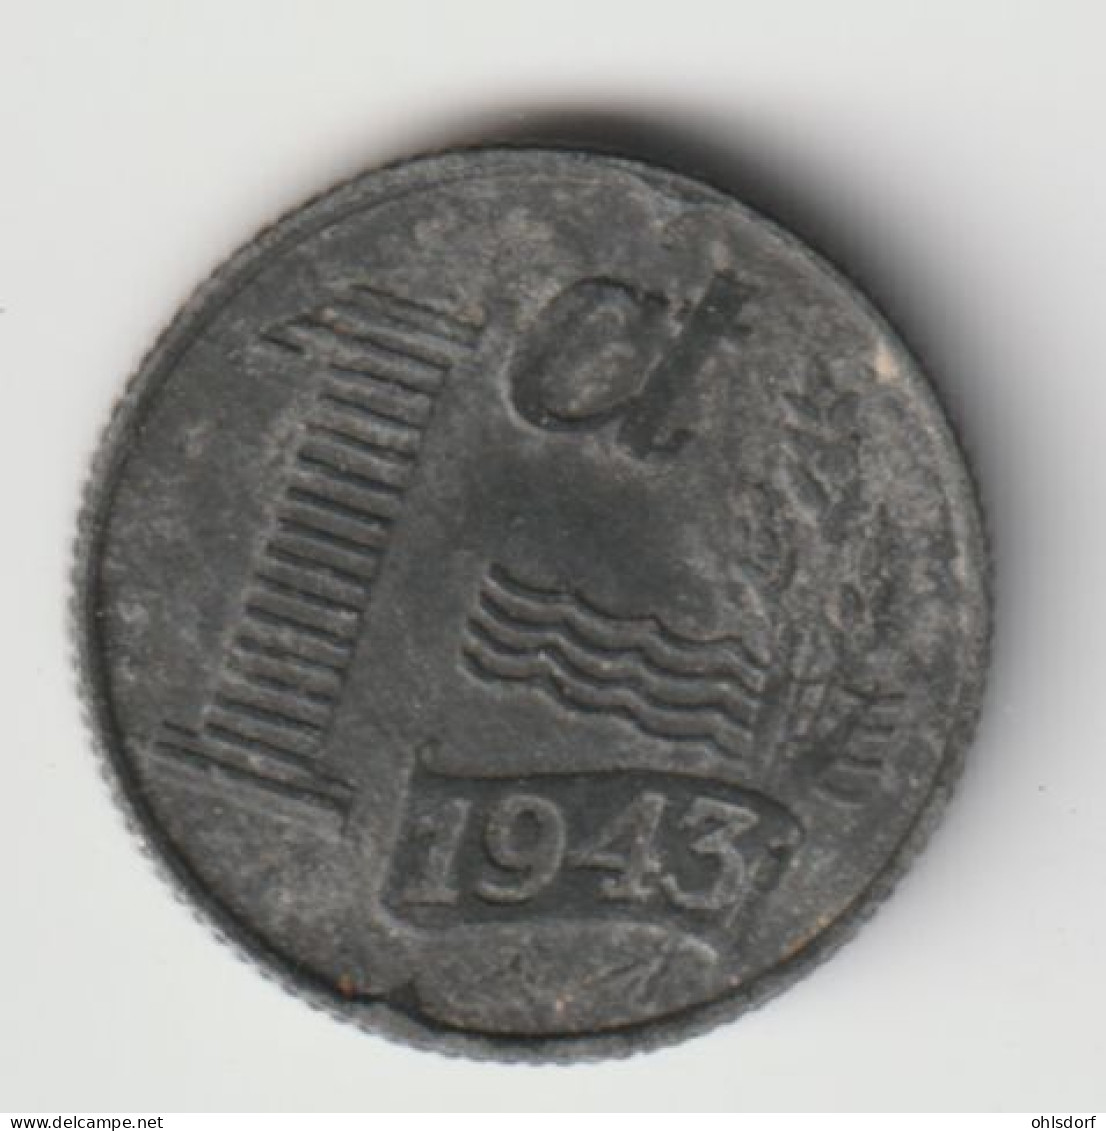 NEDERLAND 1943: 1 Cent, KM 170 - 1 Centavos